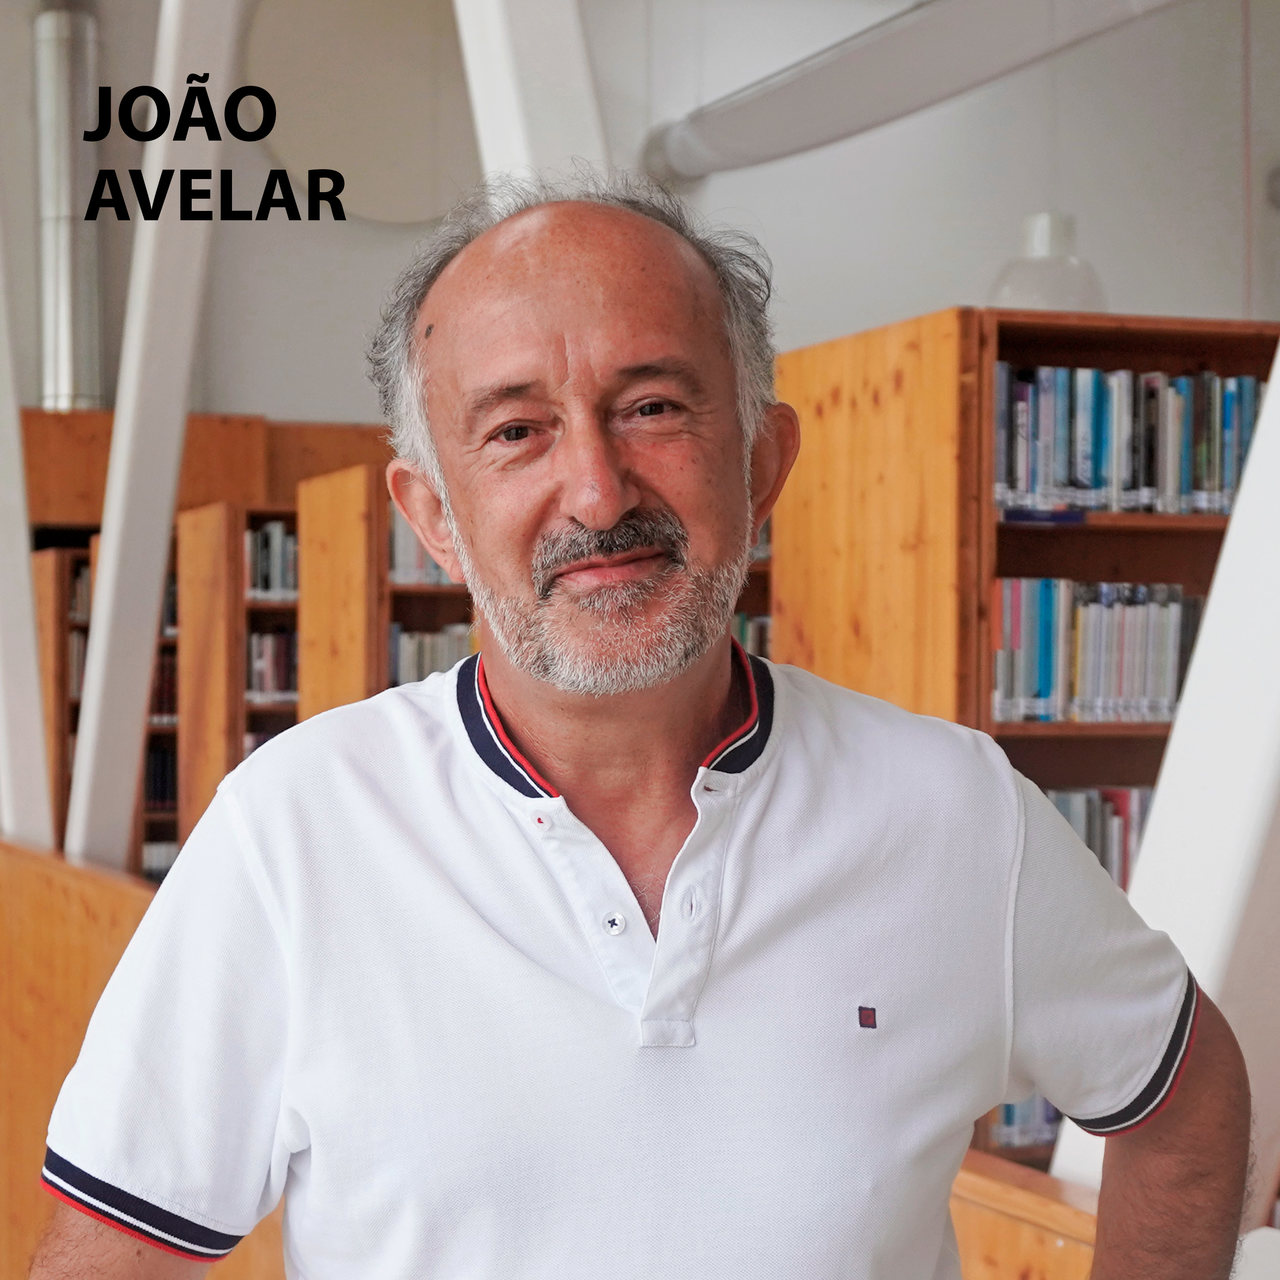 Livro de Cabeceira EP.29 – João Avelar apresenta a obra “Livro do Desassossego” do autor Fernando Pessoa.